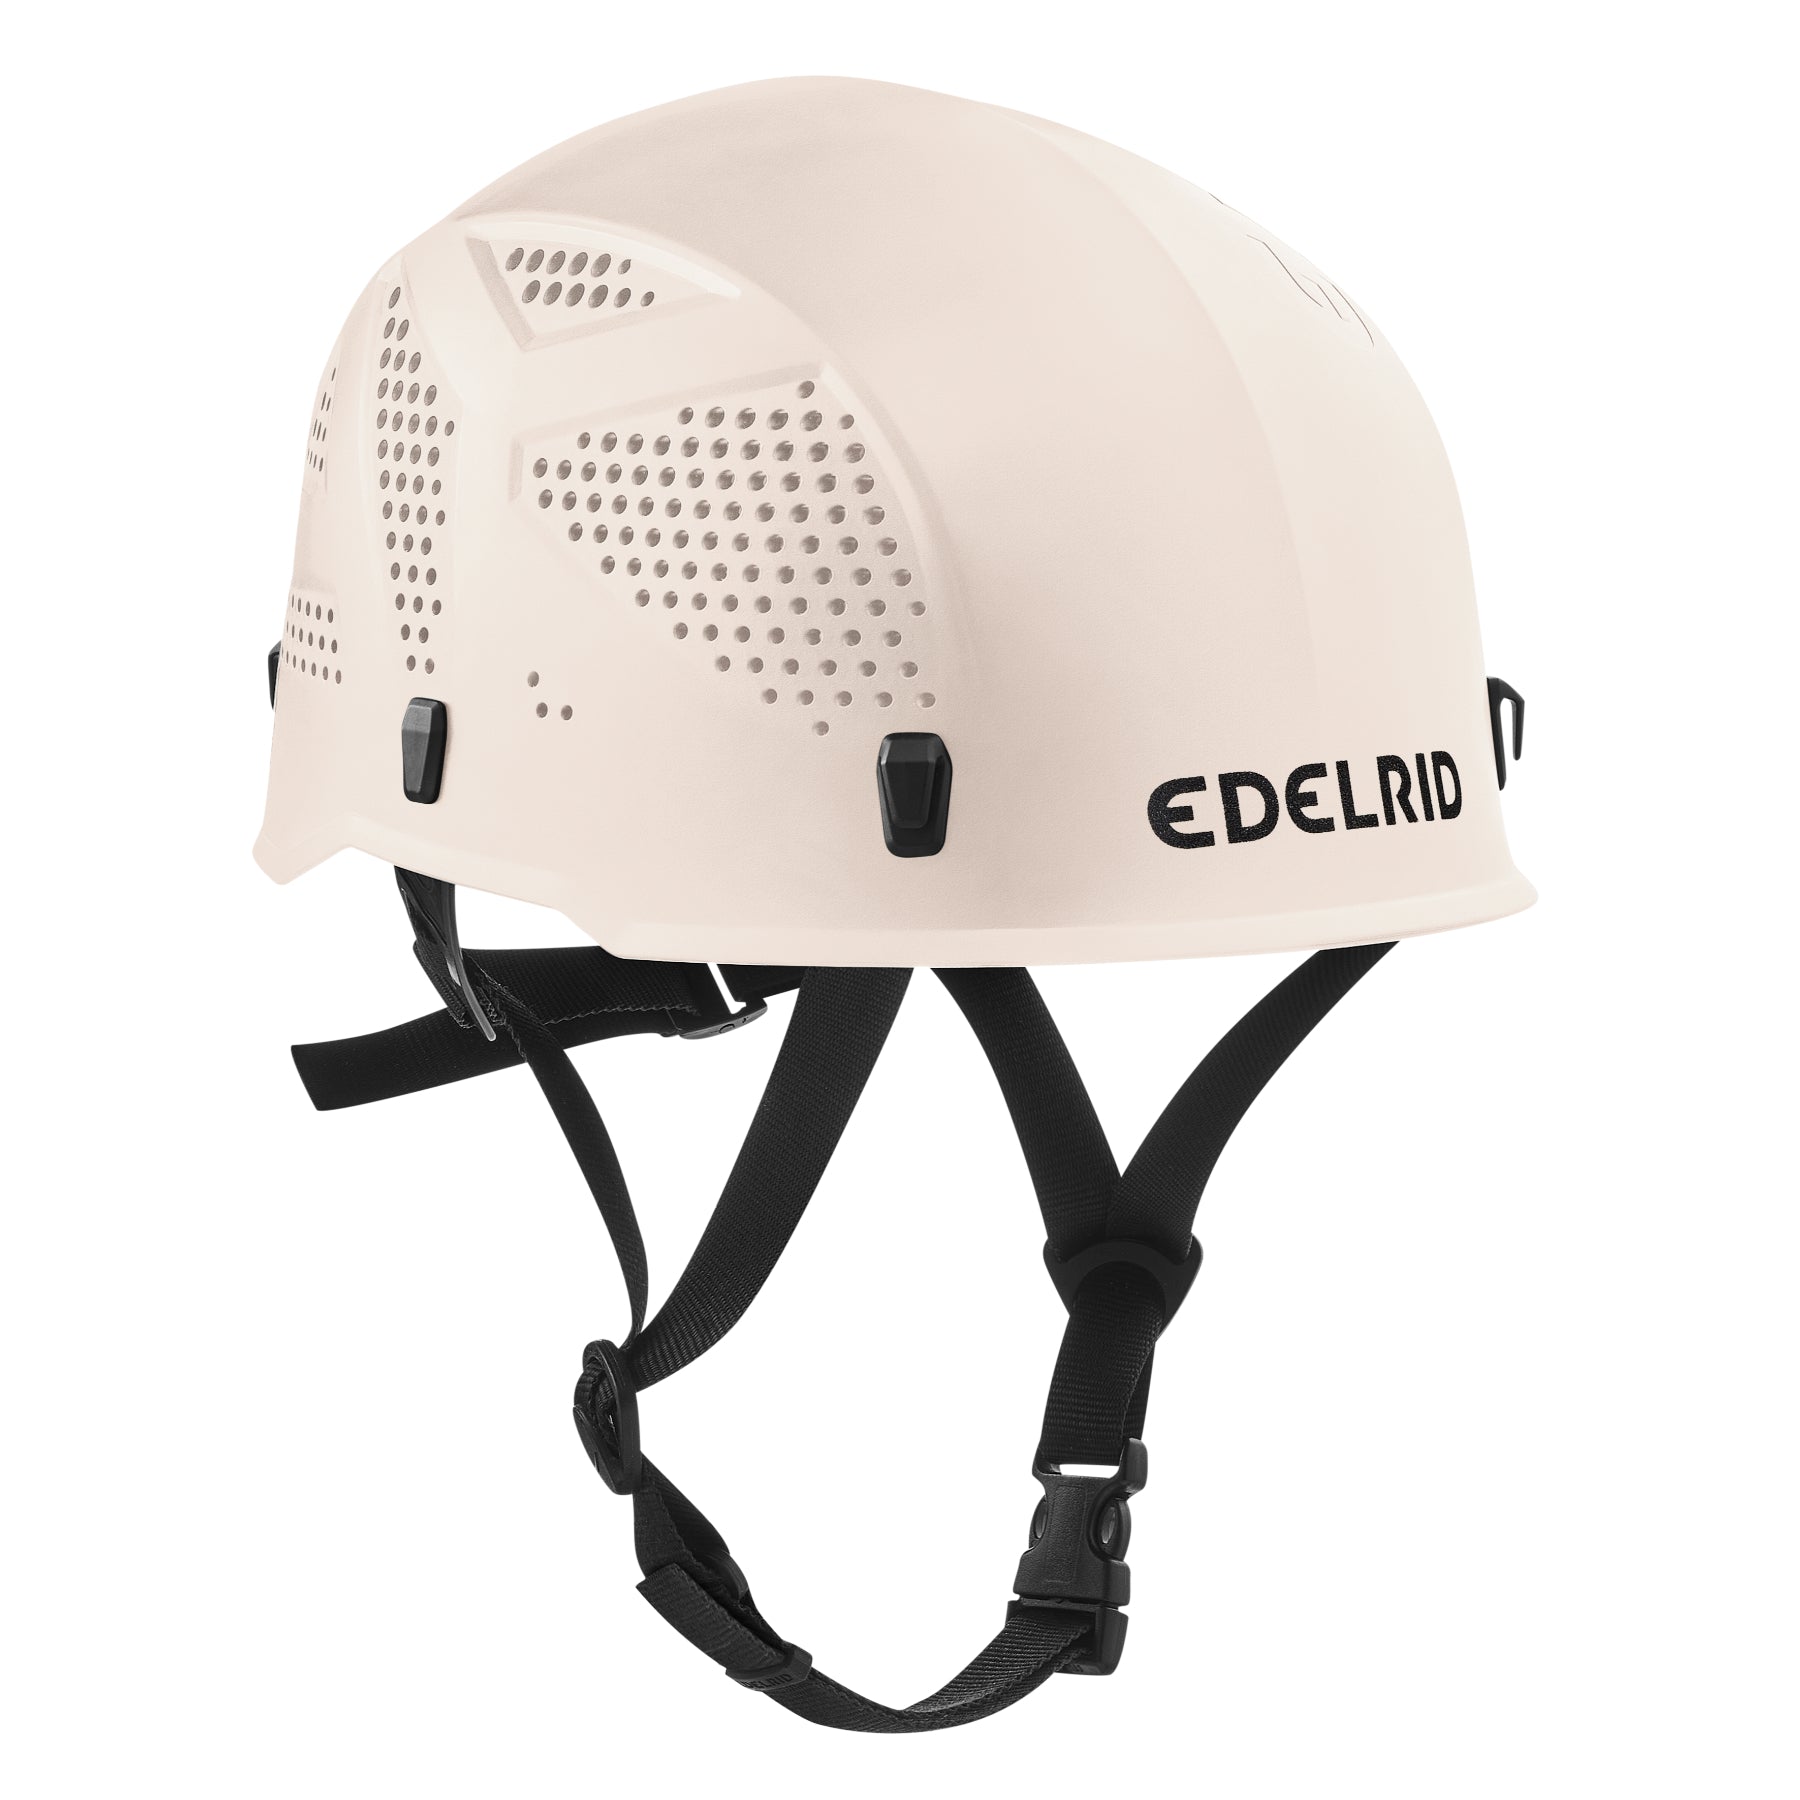 Edelrid Ultralight helmet in icemint colour